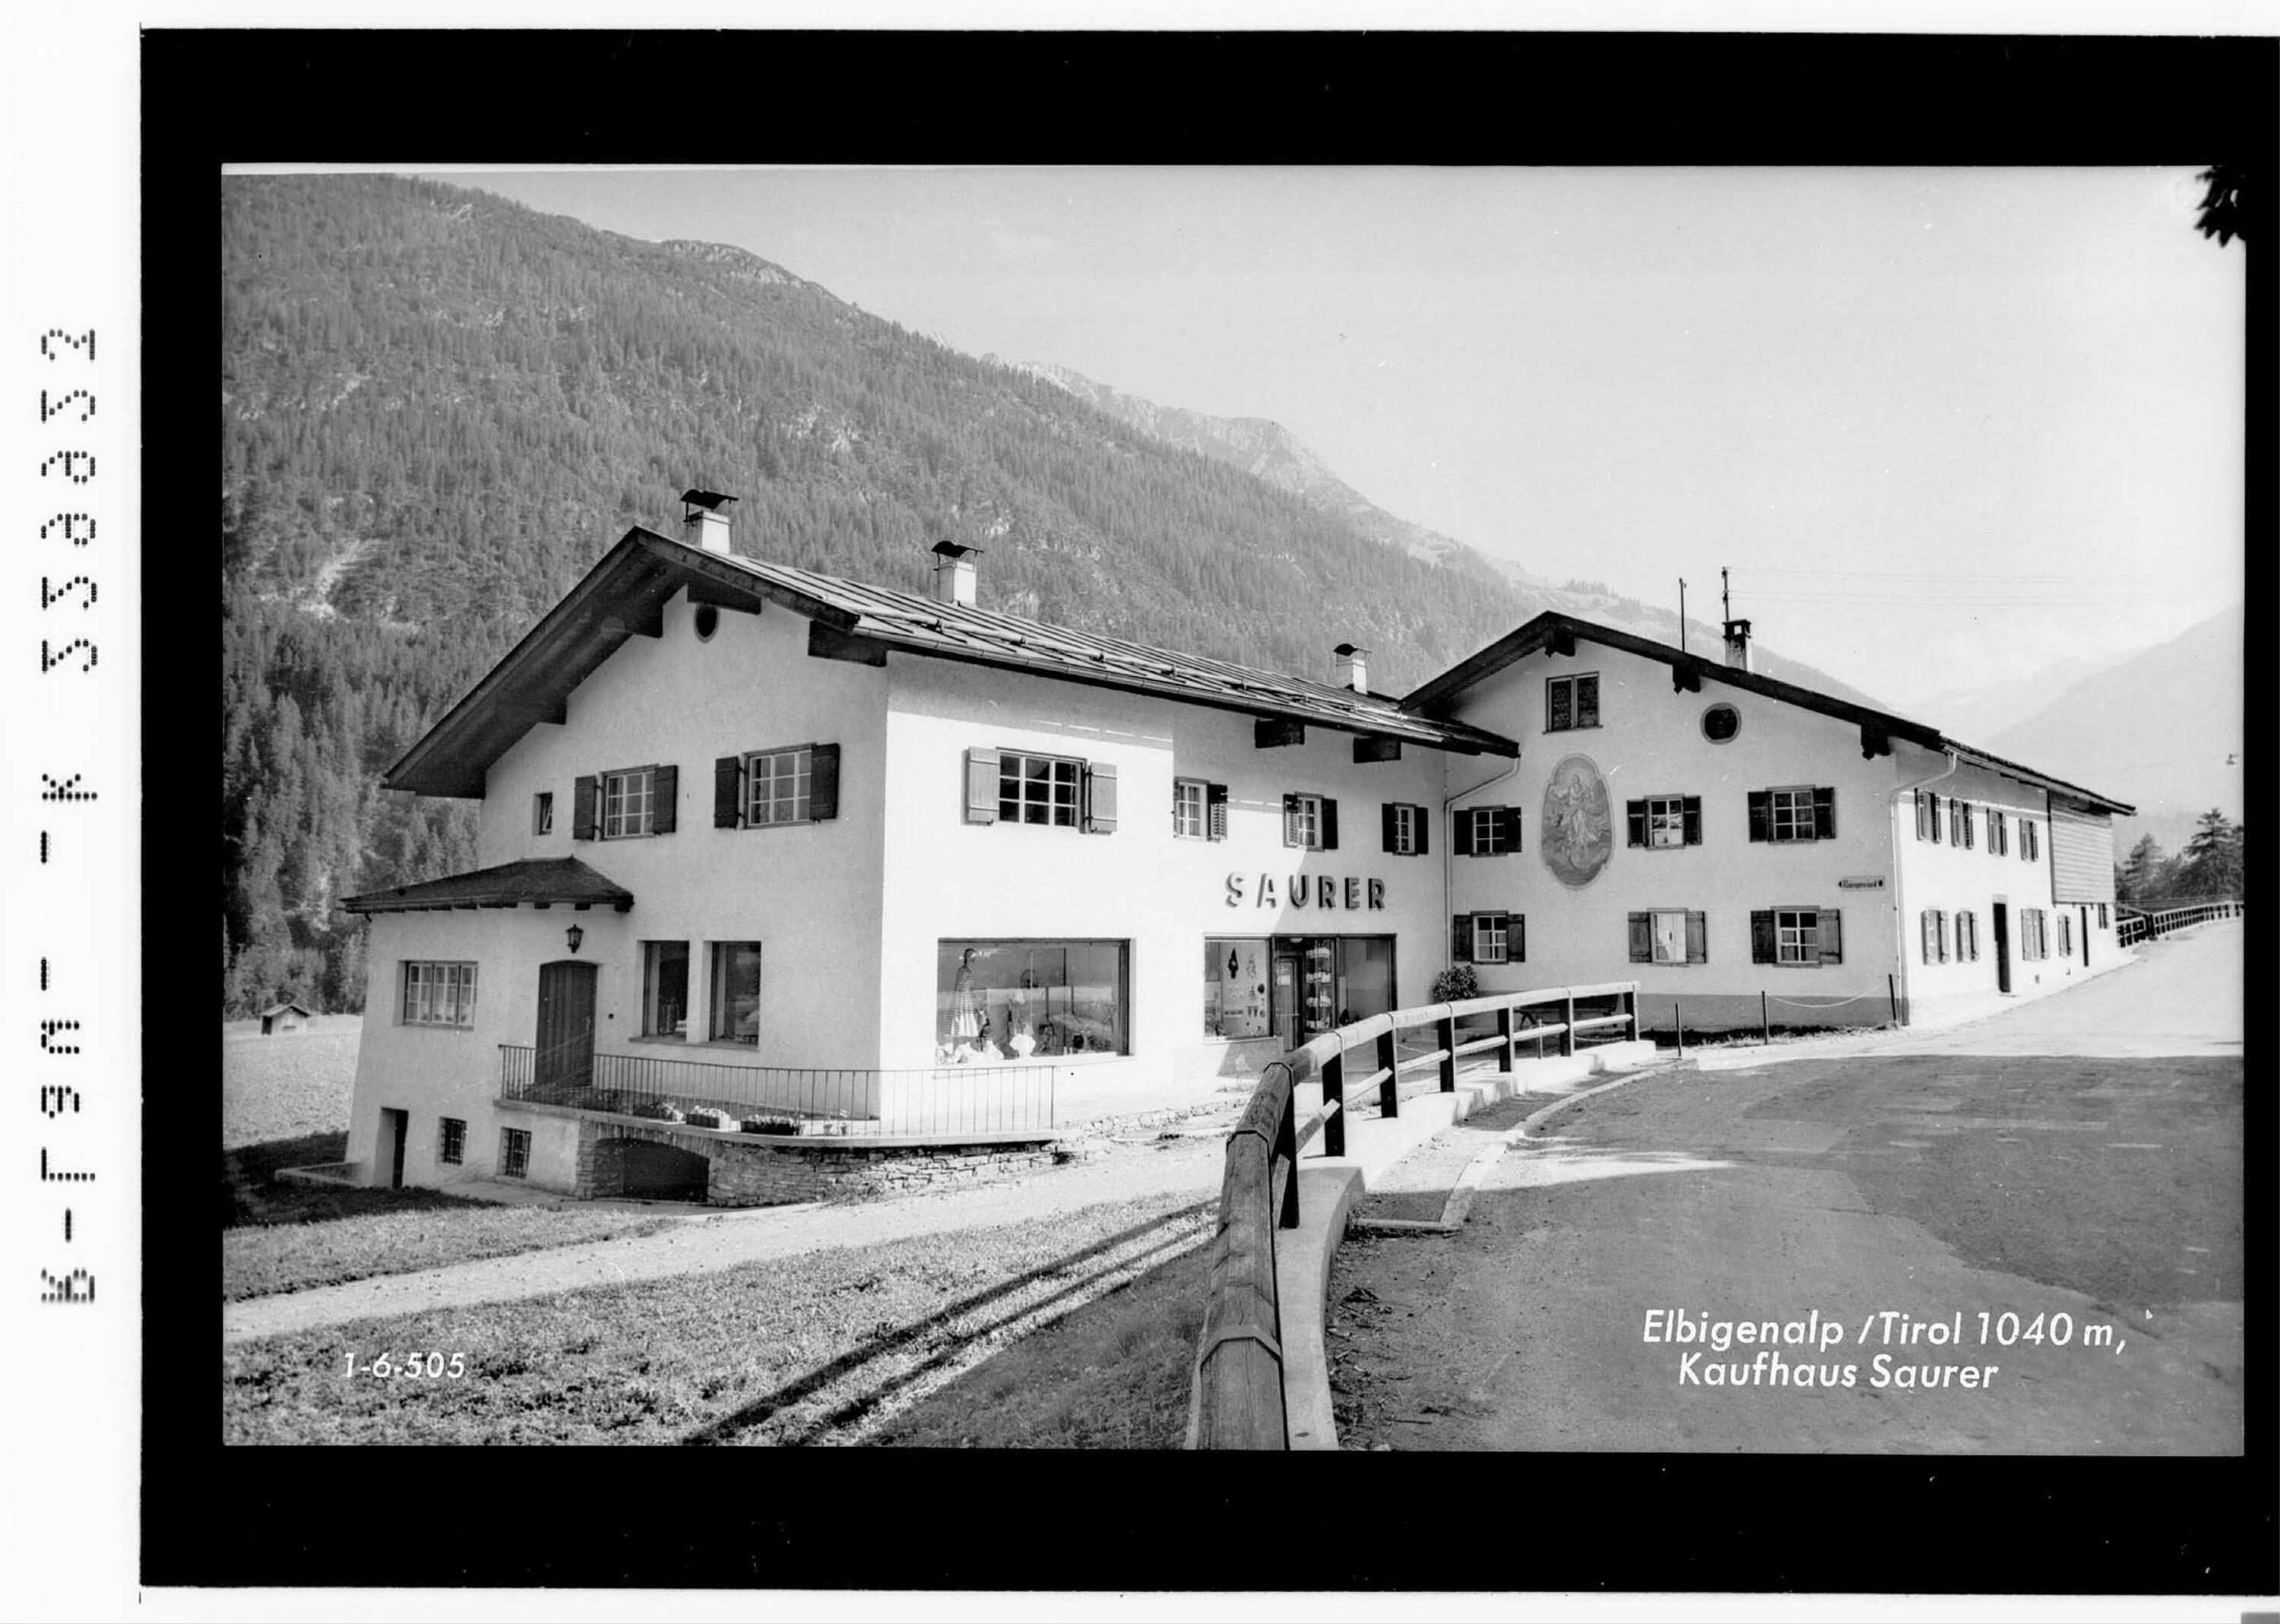 Elbigenalp / Tirol 1040 m / Kaufhaus Saurer></div>


    <hr>
    <div class=